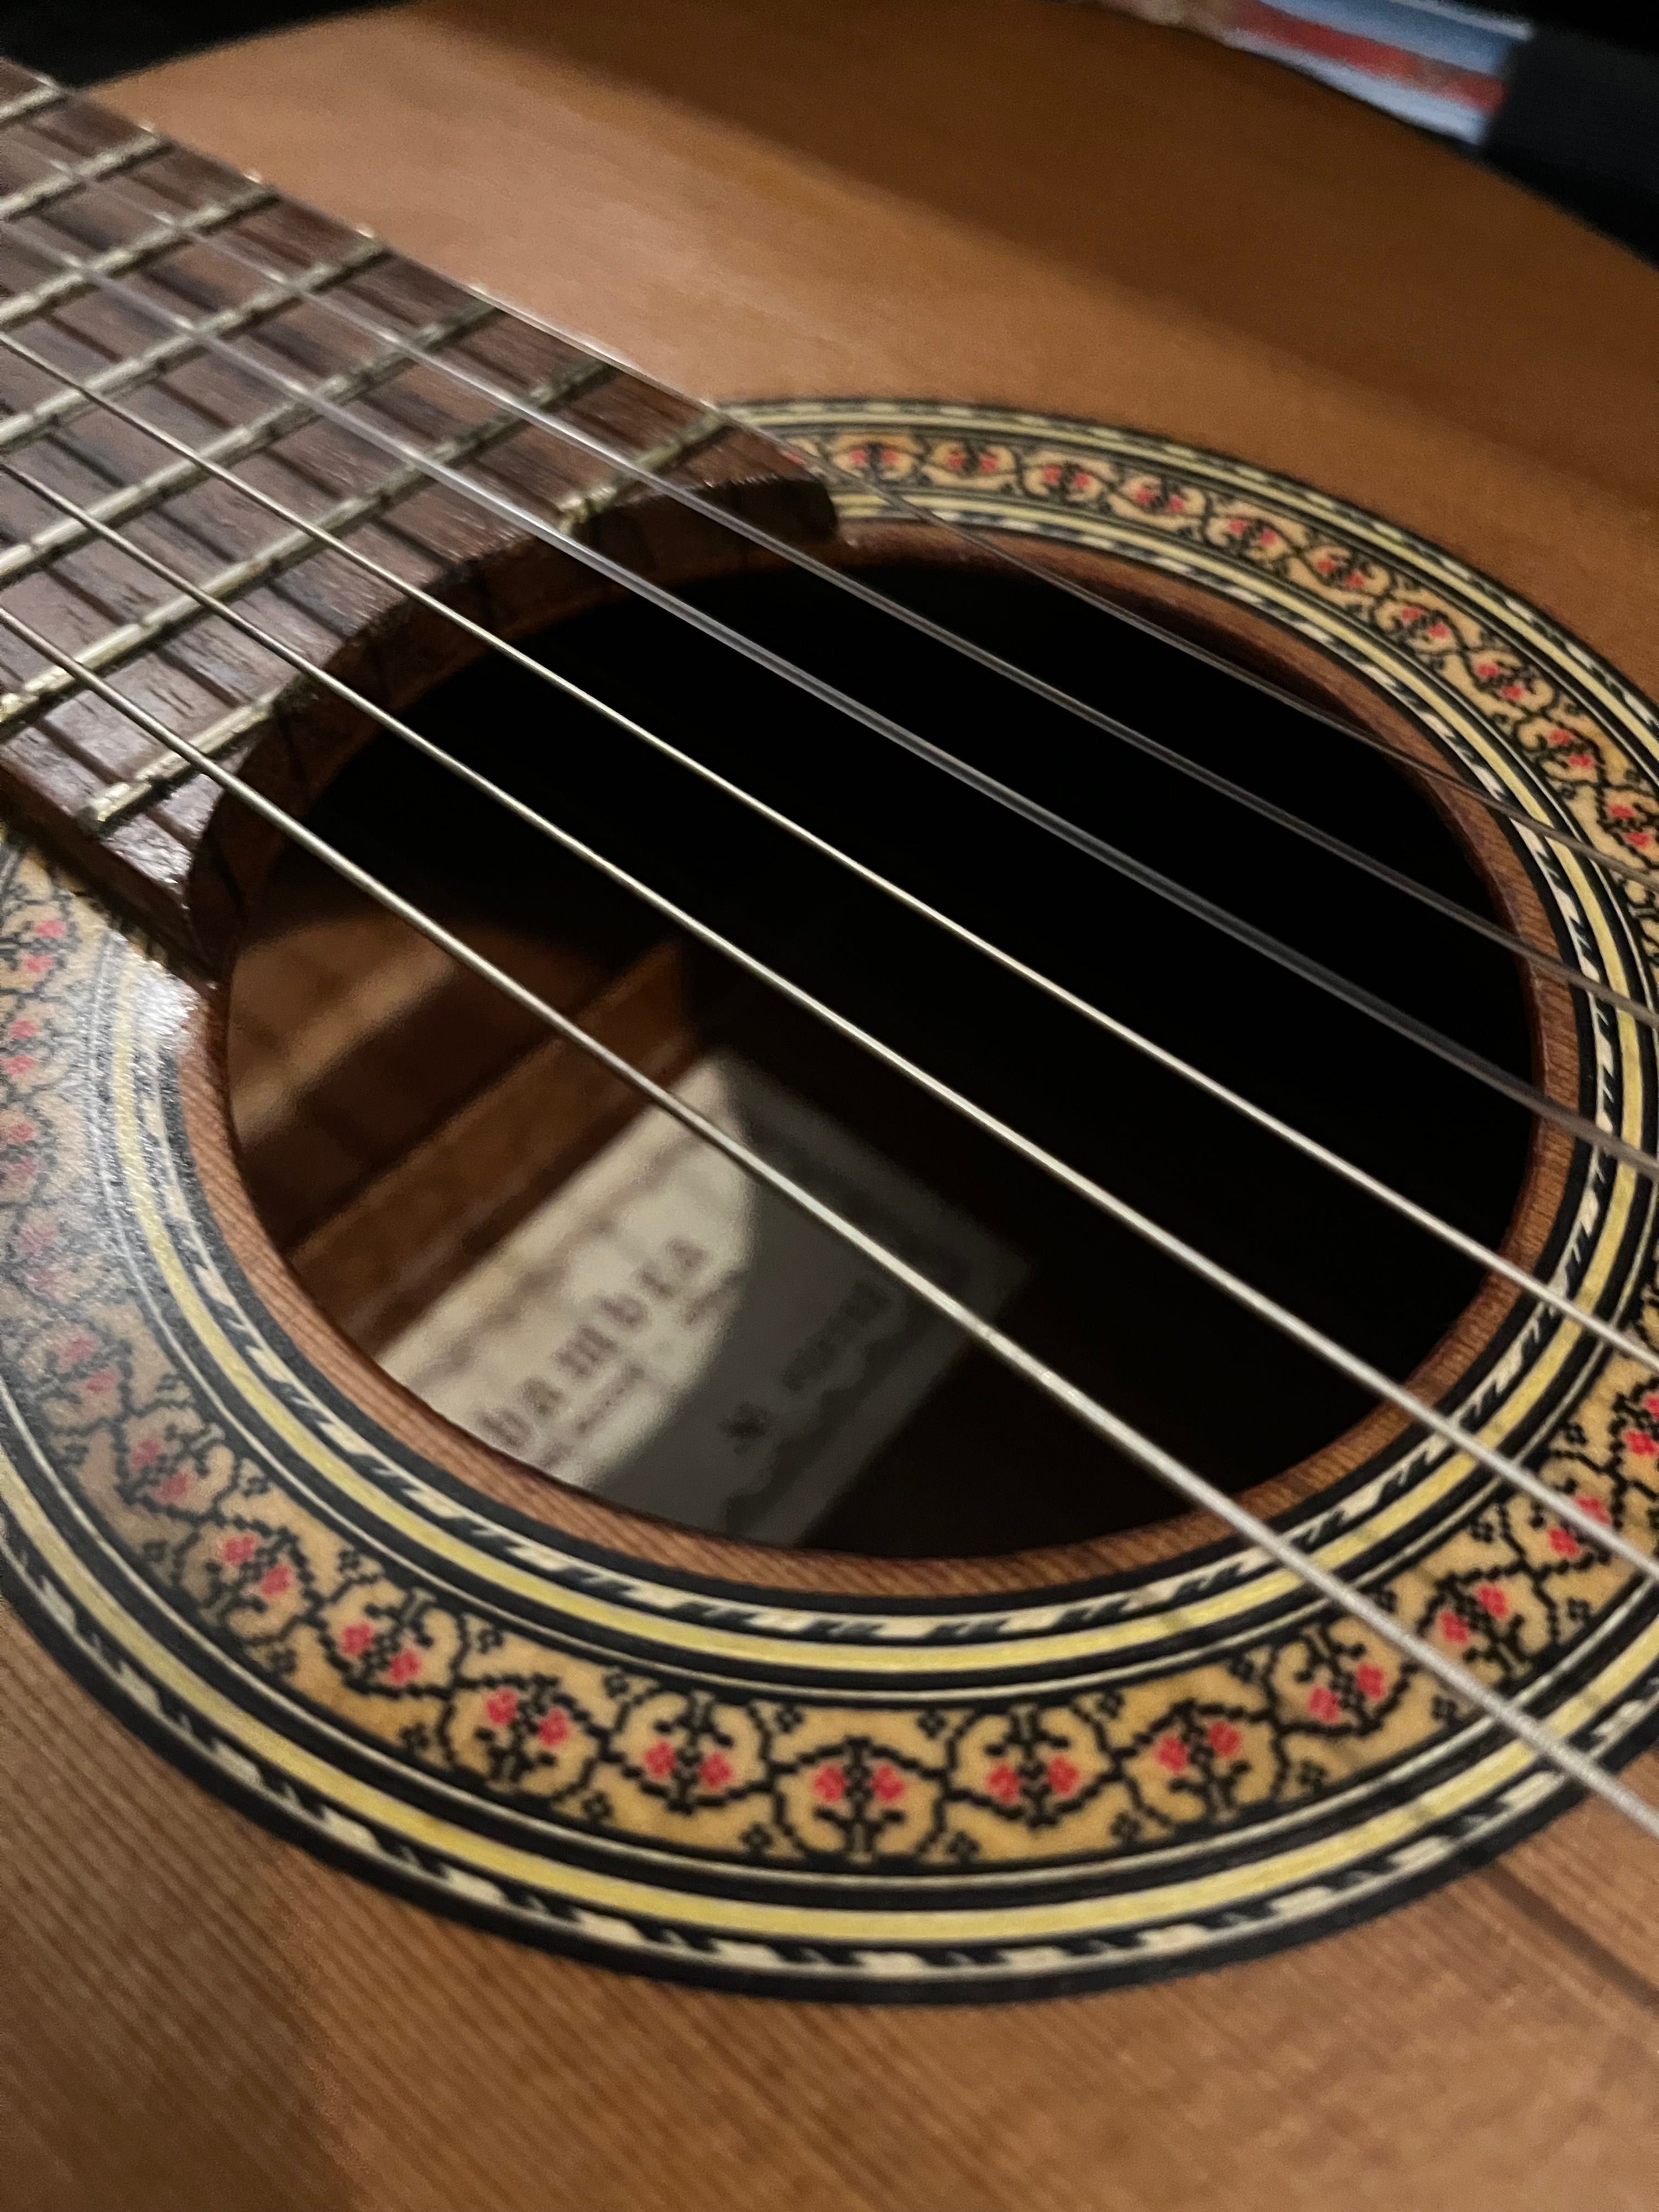 Guitarra Clássica Alhambra 3C